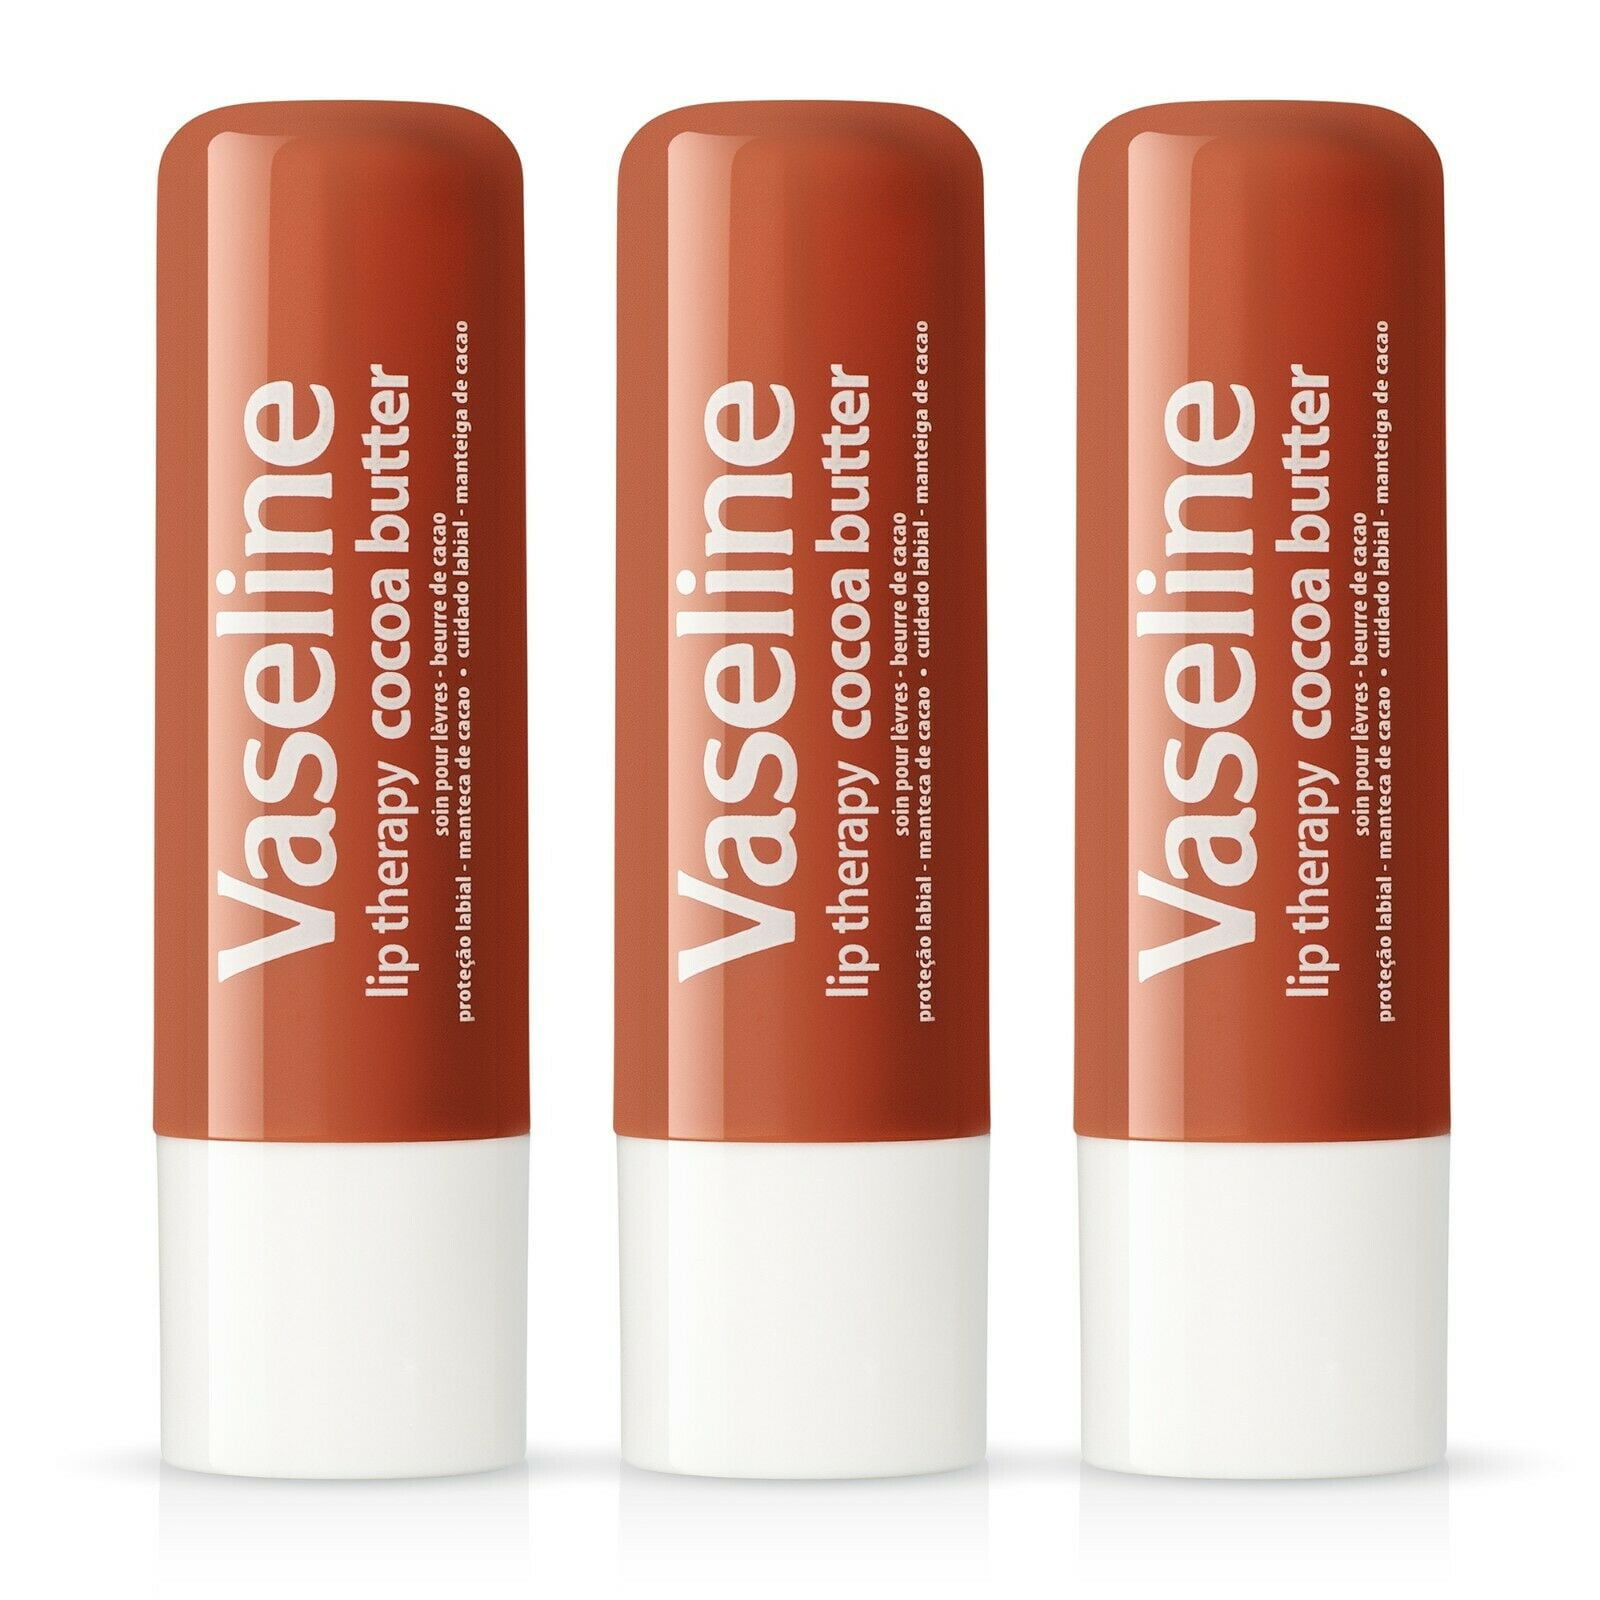 Vaseline Lip Therapy 20g Choose Original, Aloe Vera, Cocoa Butter, Rosy Lips